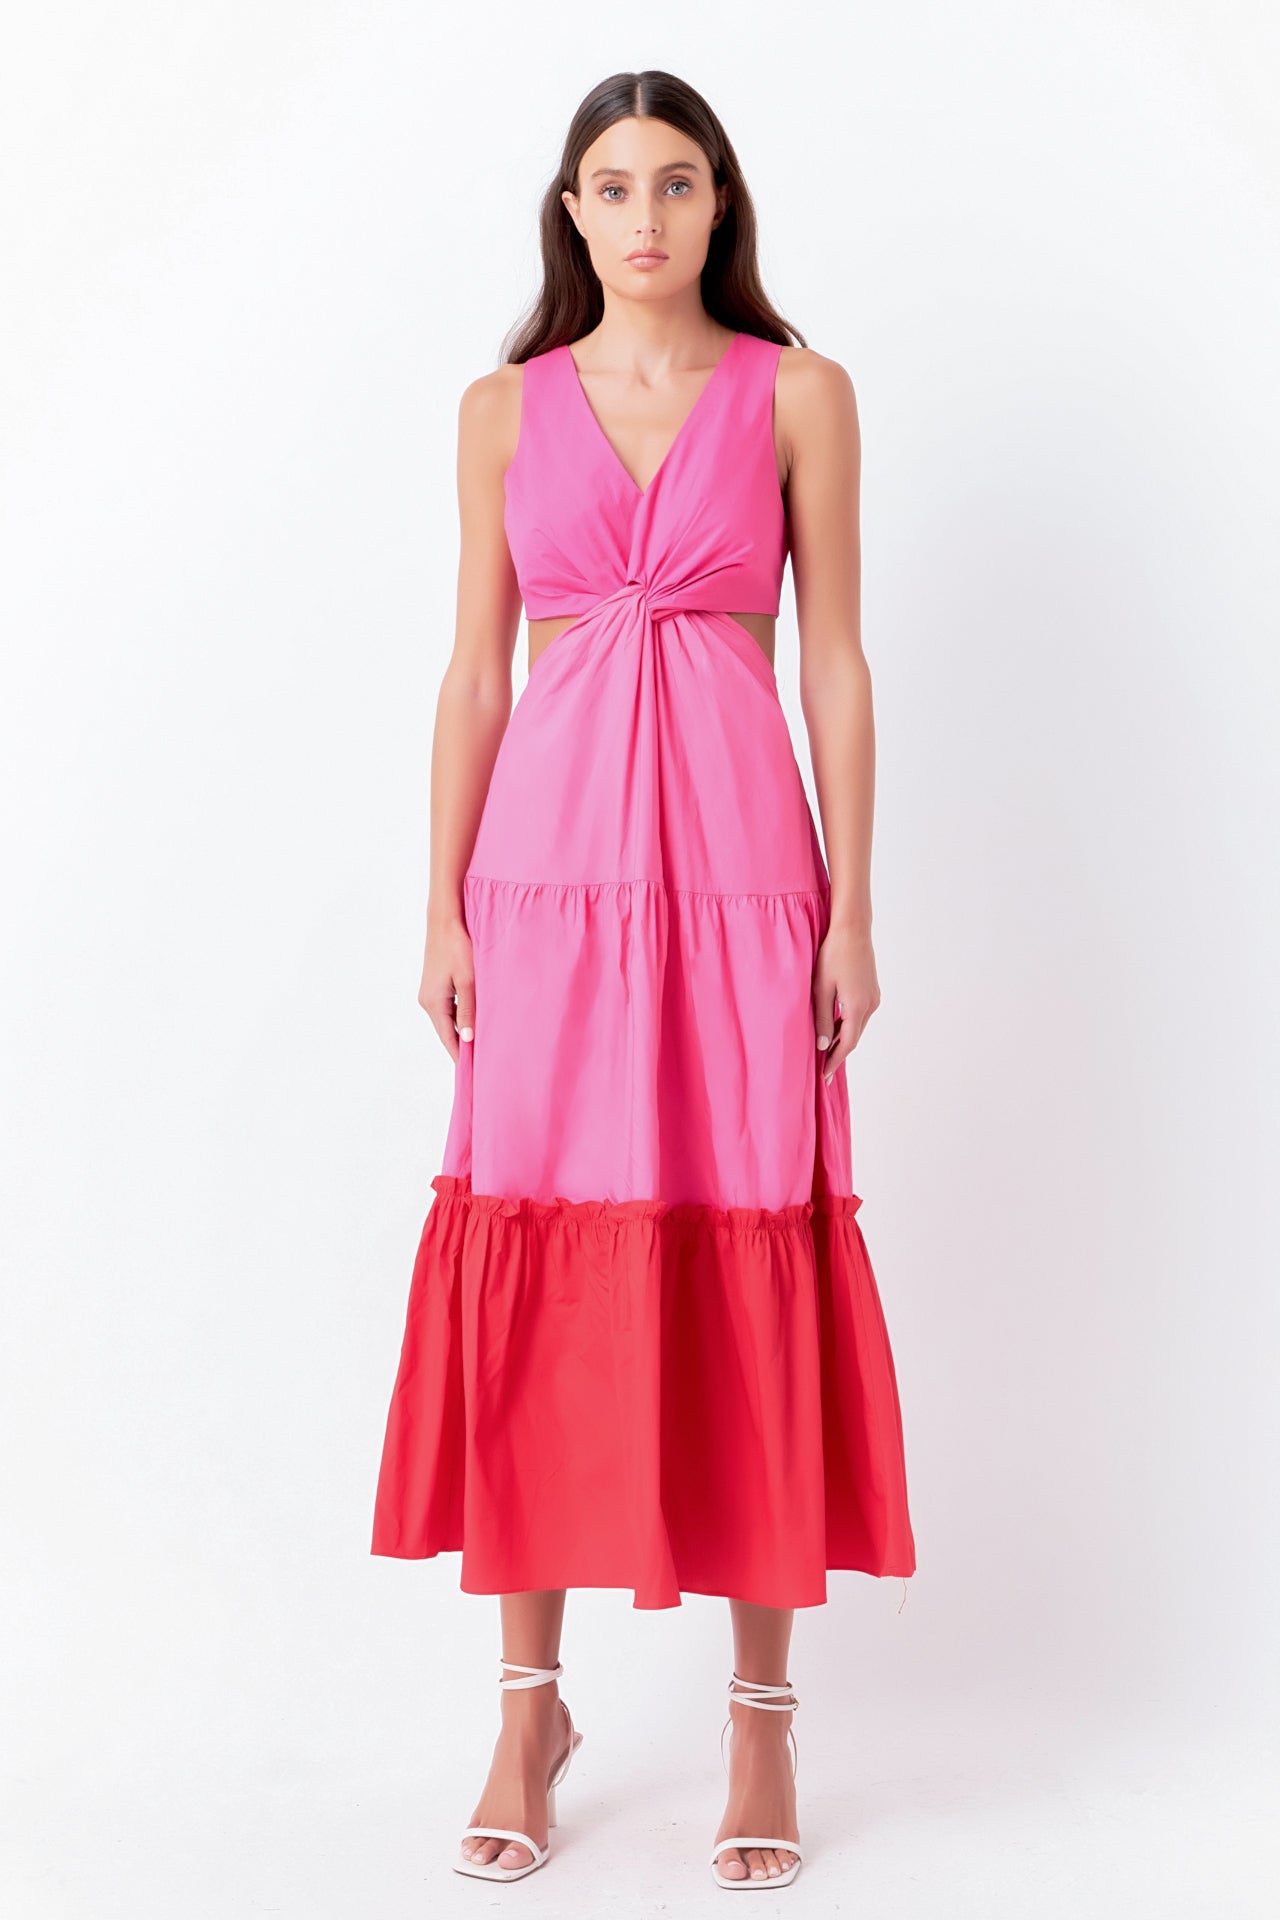 Dresses - Mini, Midi & Maxi Dresses for Women – Page 7 – Endless Rose